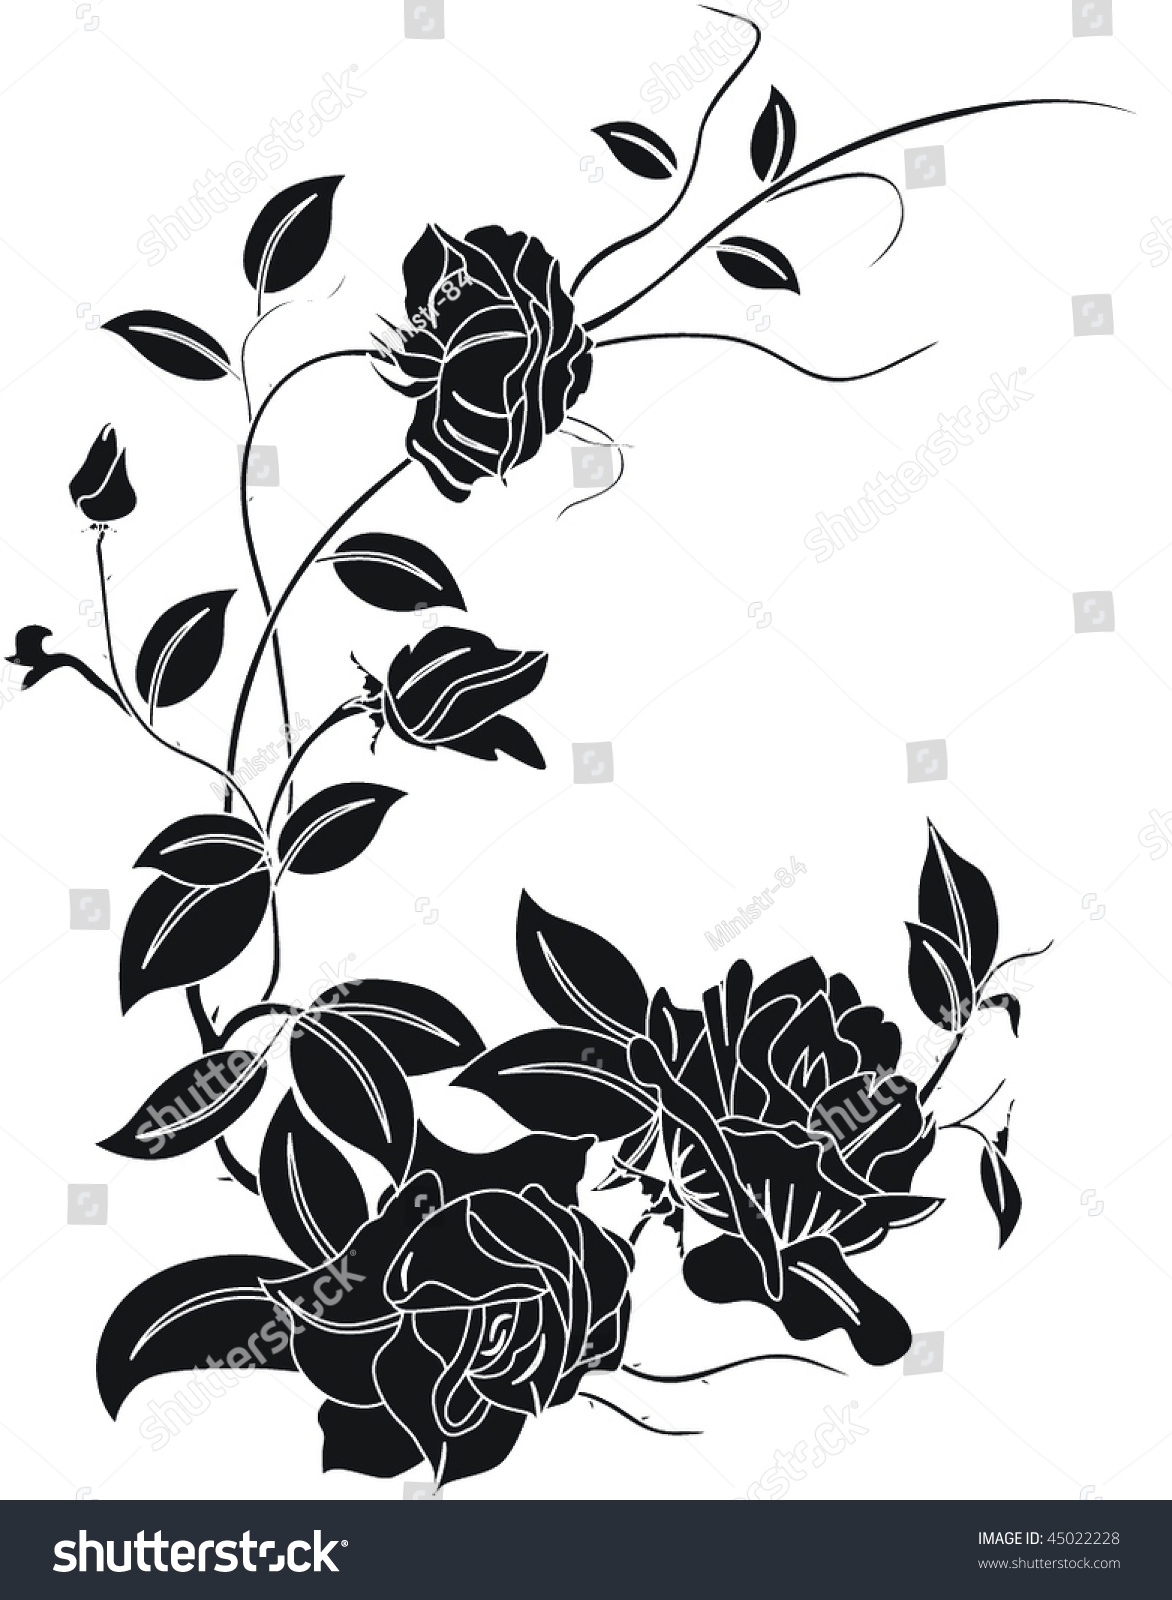 Vector Flowers On White Background - 45022228 : Shutterstock